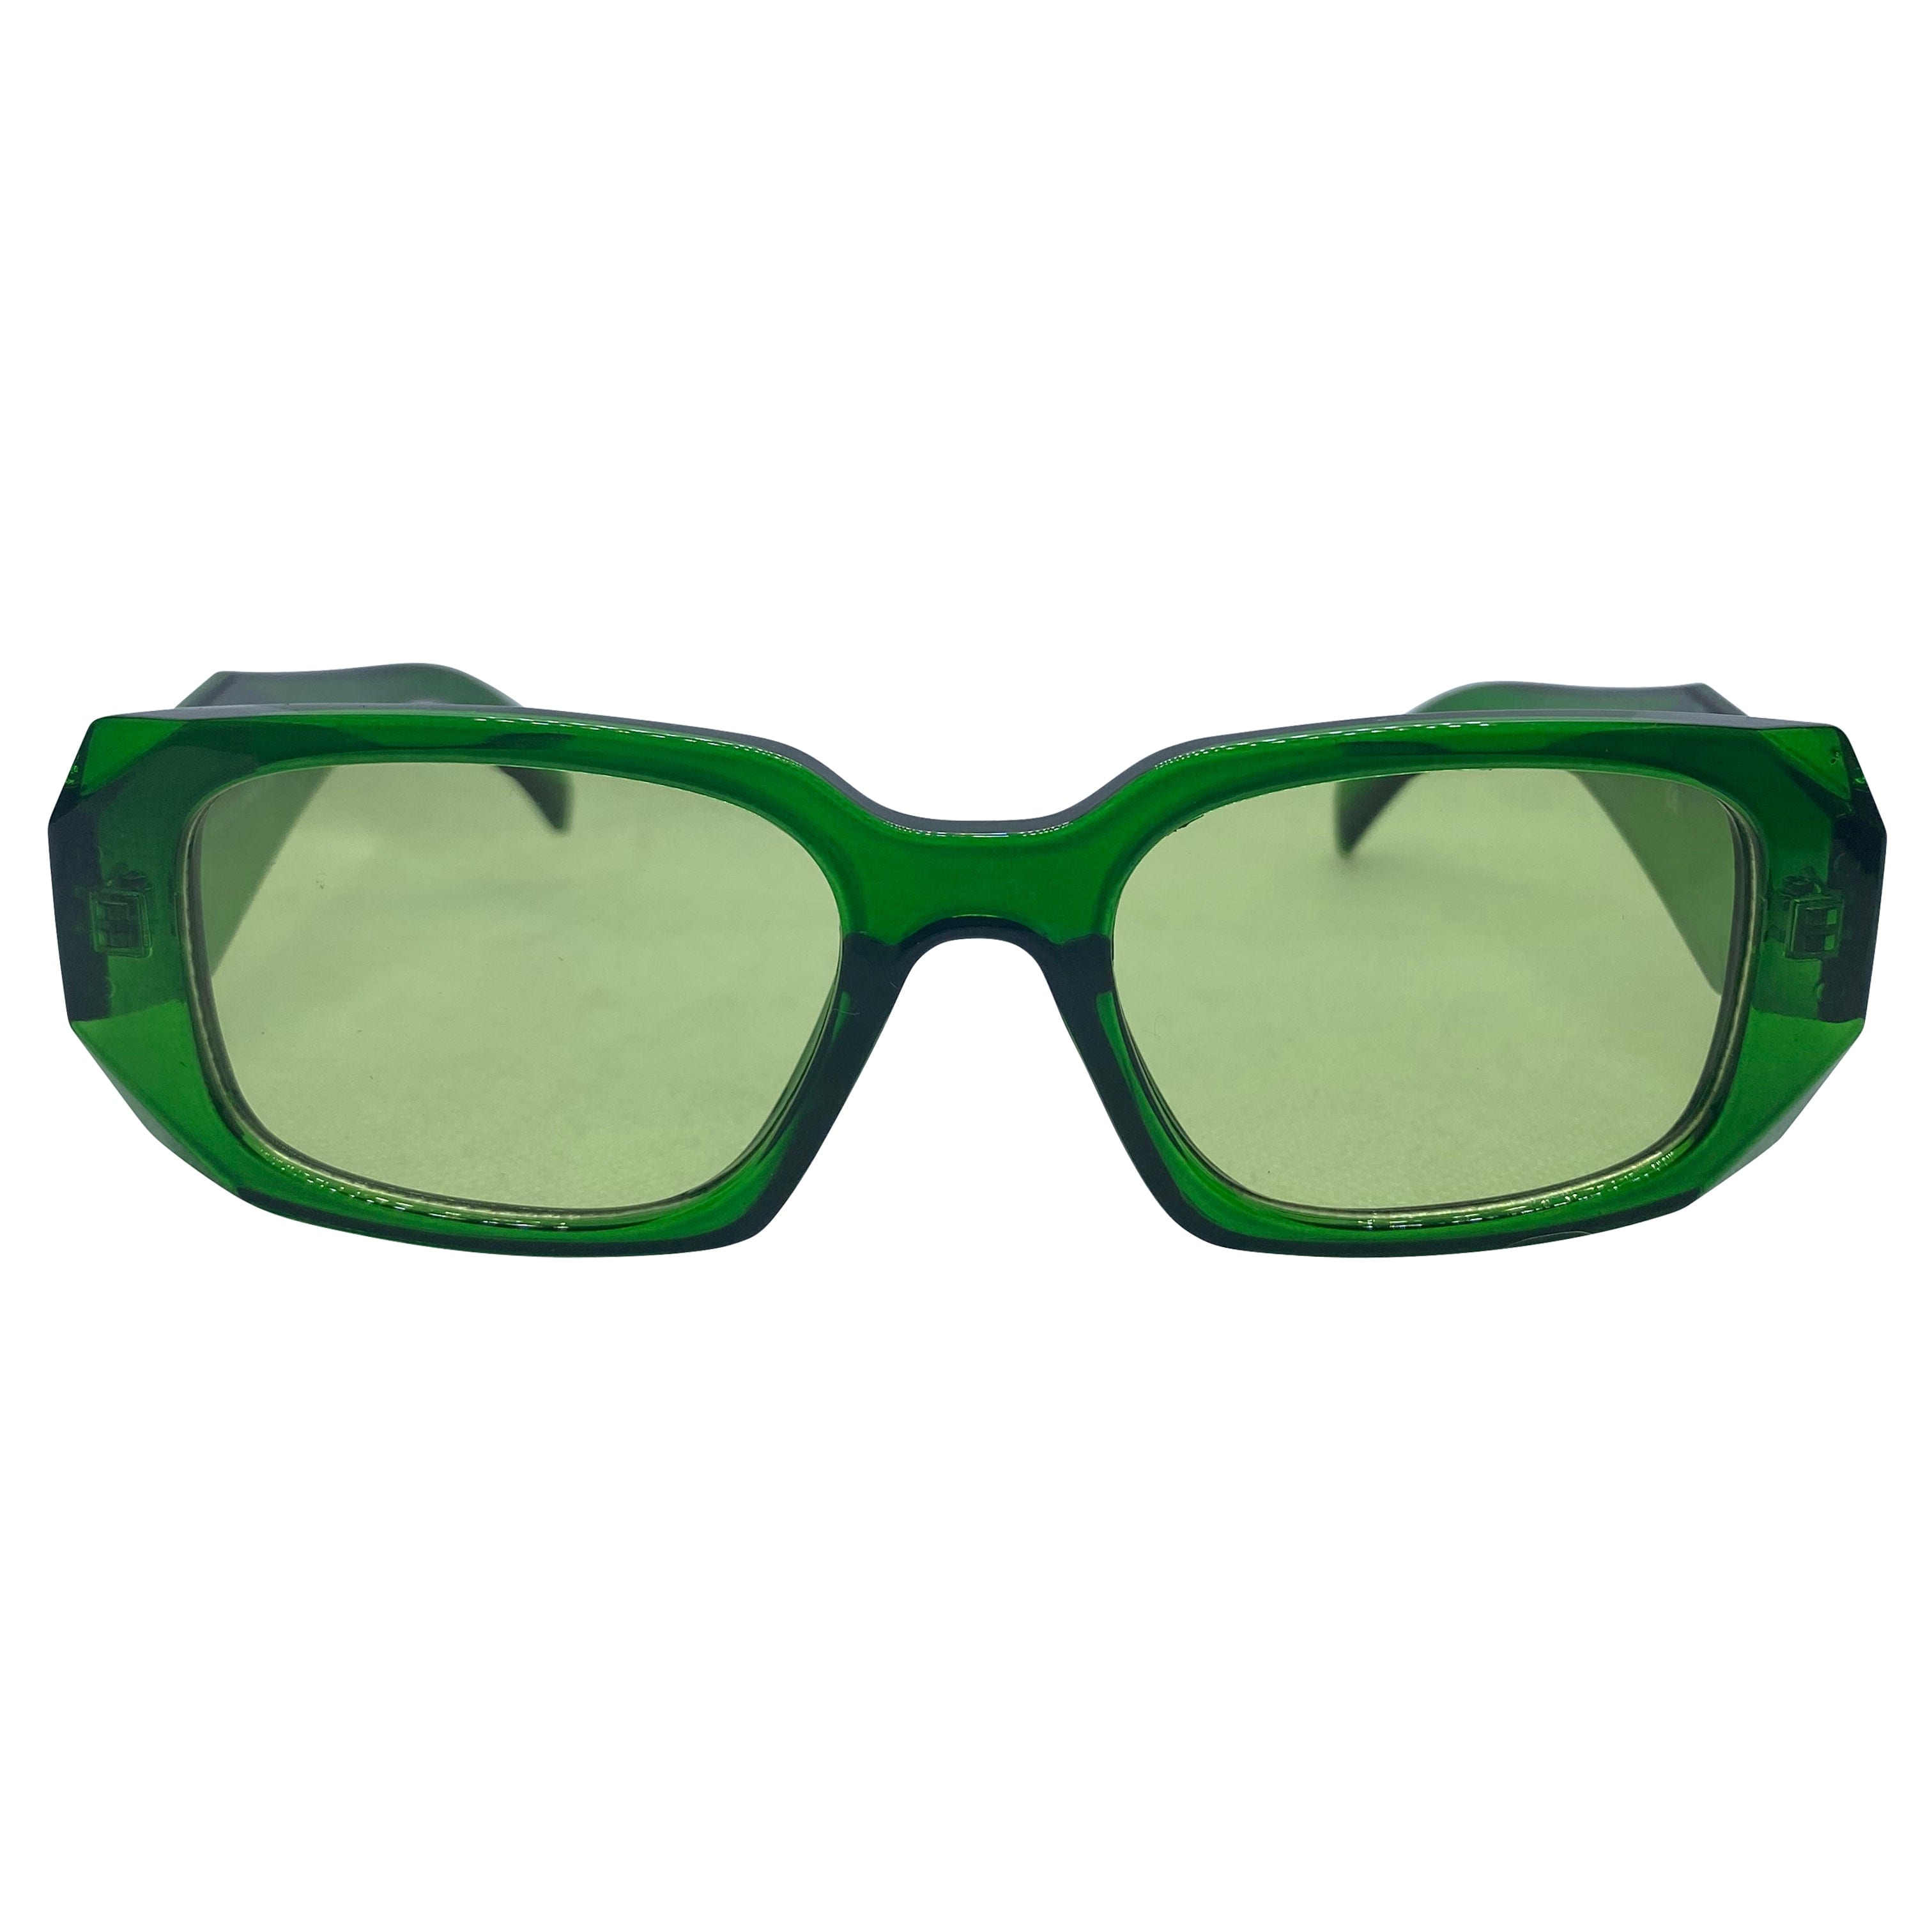 KNIGHT Green/Green Square Sunglasses